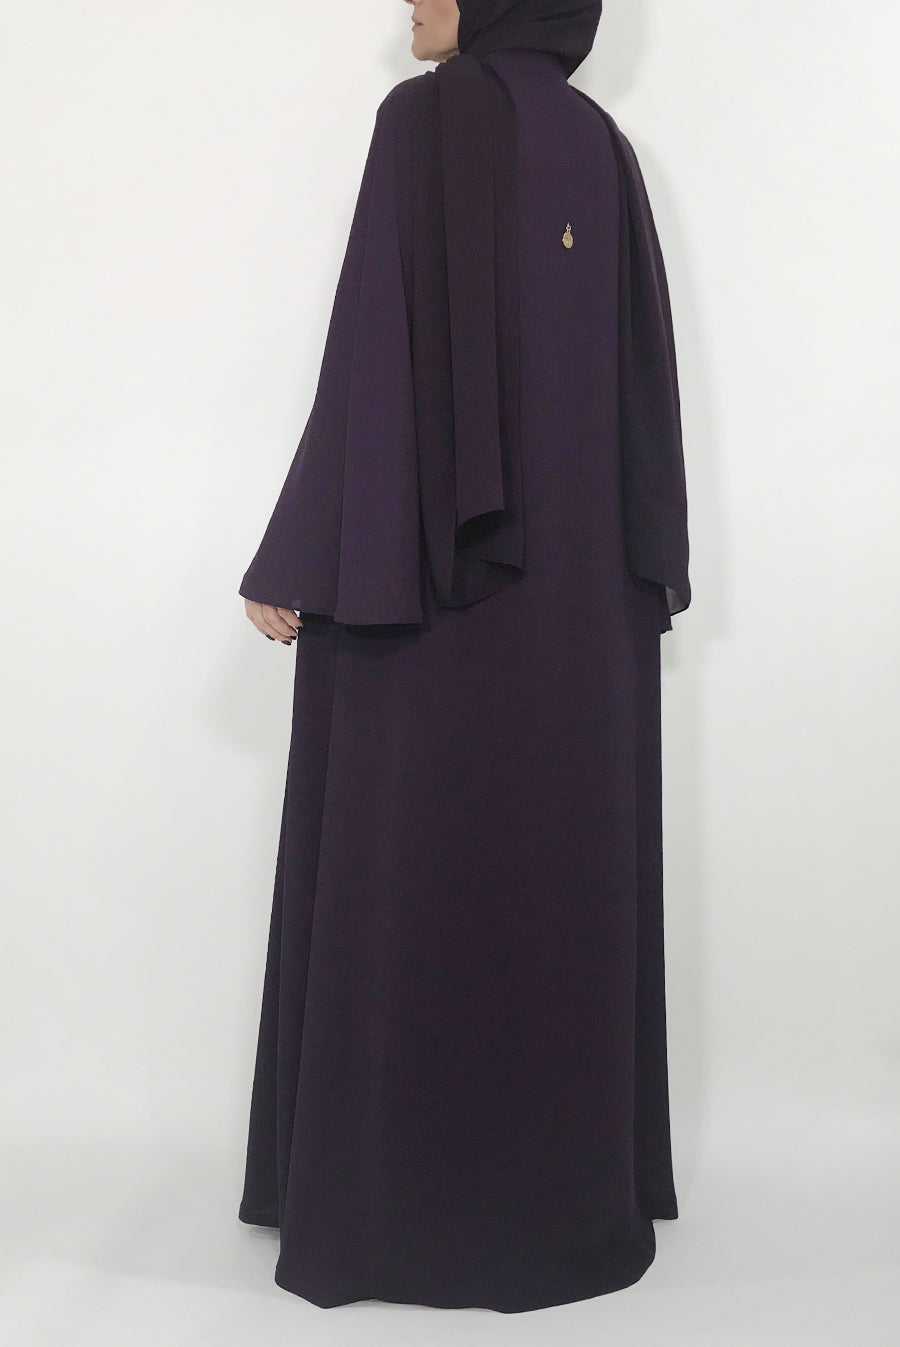 purple abaya - thowby - abaya online dubai - Flared abaya back